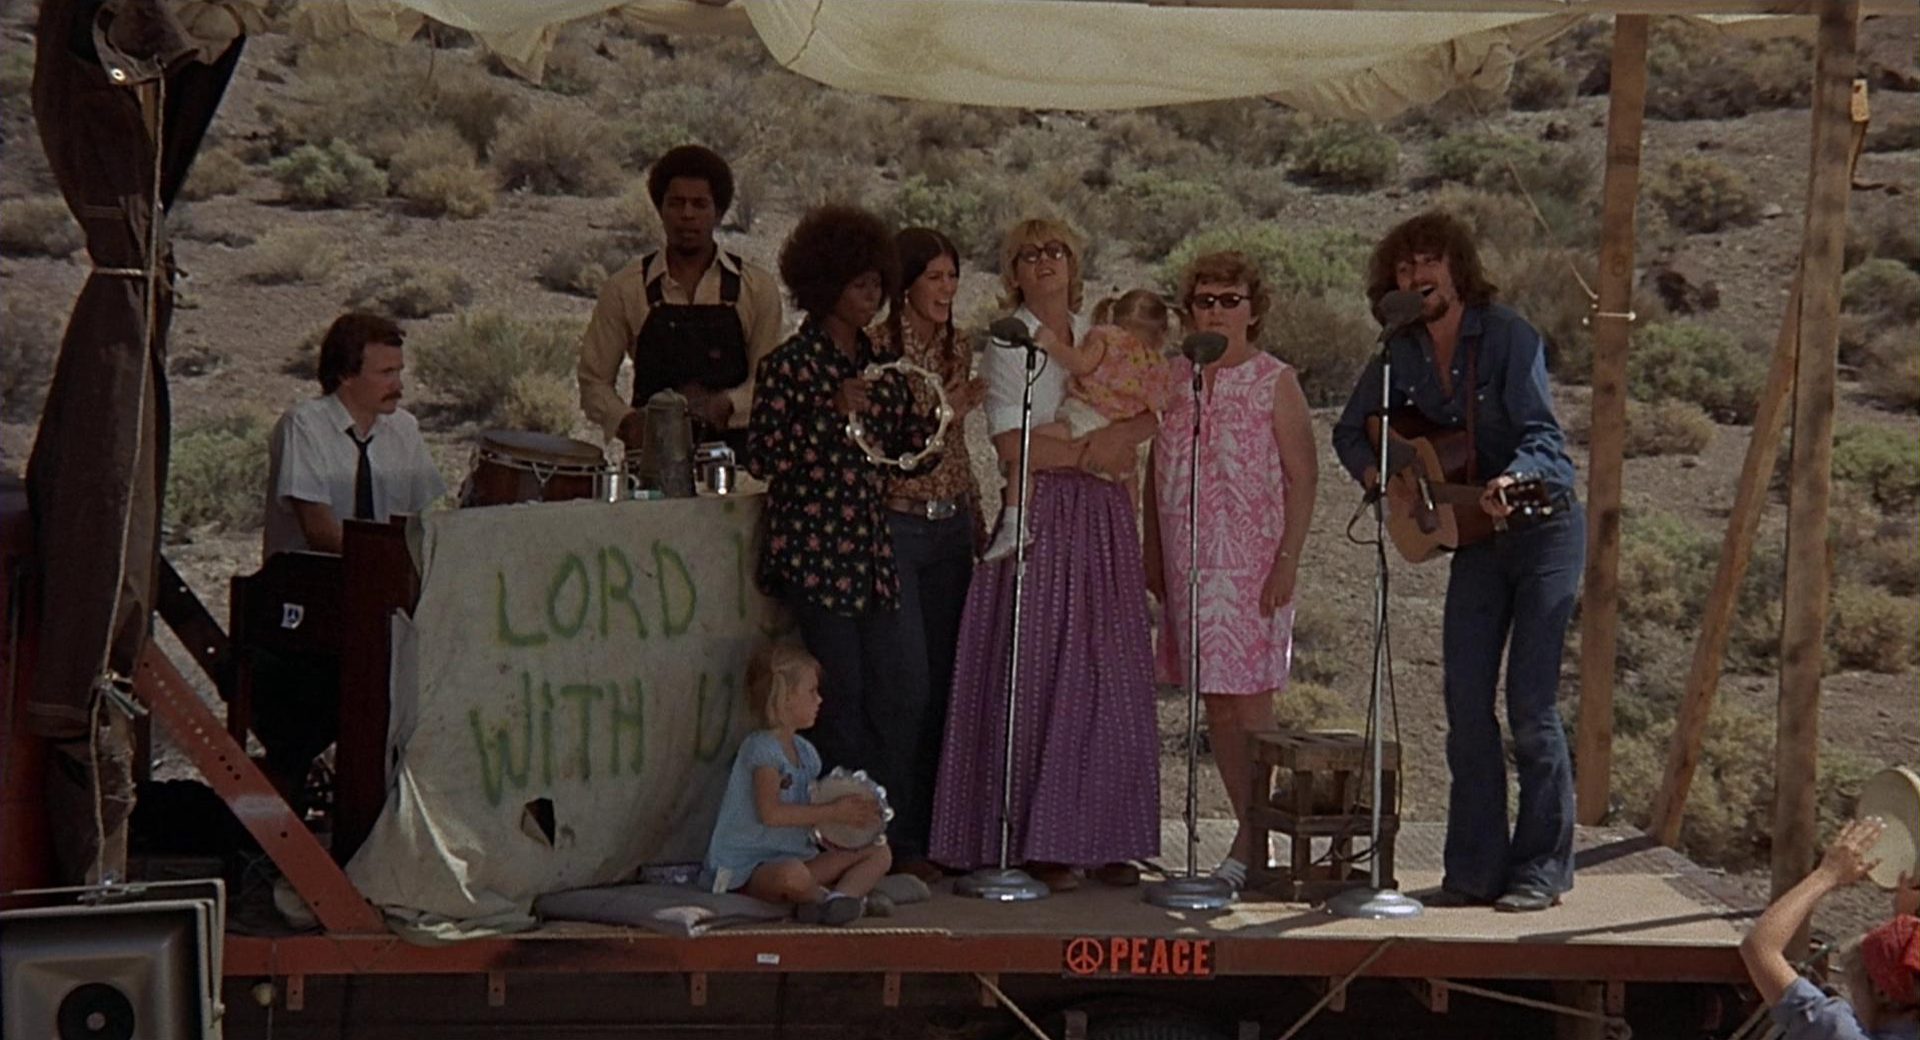 Szene mit gegenkulturellem Flair: Auf einer provisorischen Bühne mitten in der Wüste musizieren Menschen unterschiedlicher Hautfarbe und Altersgruppen.